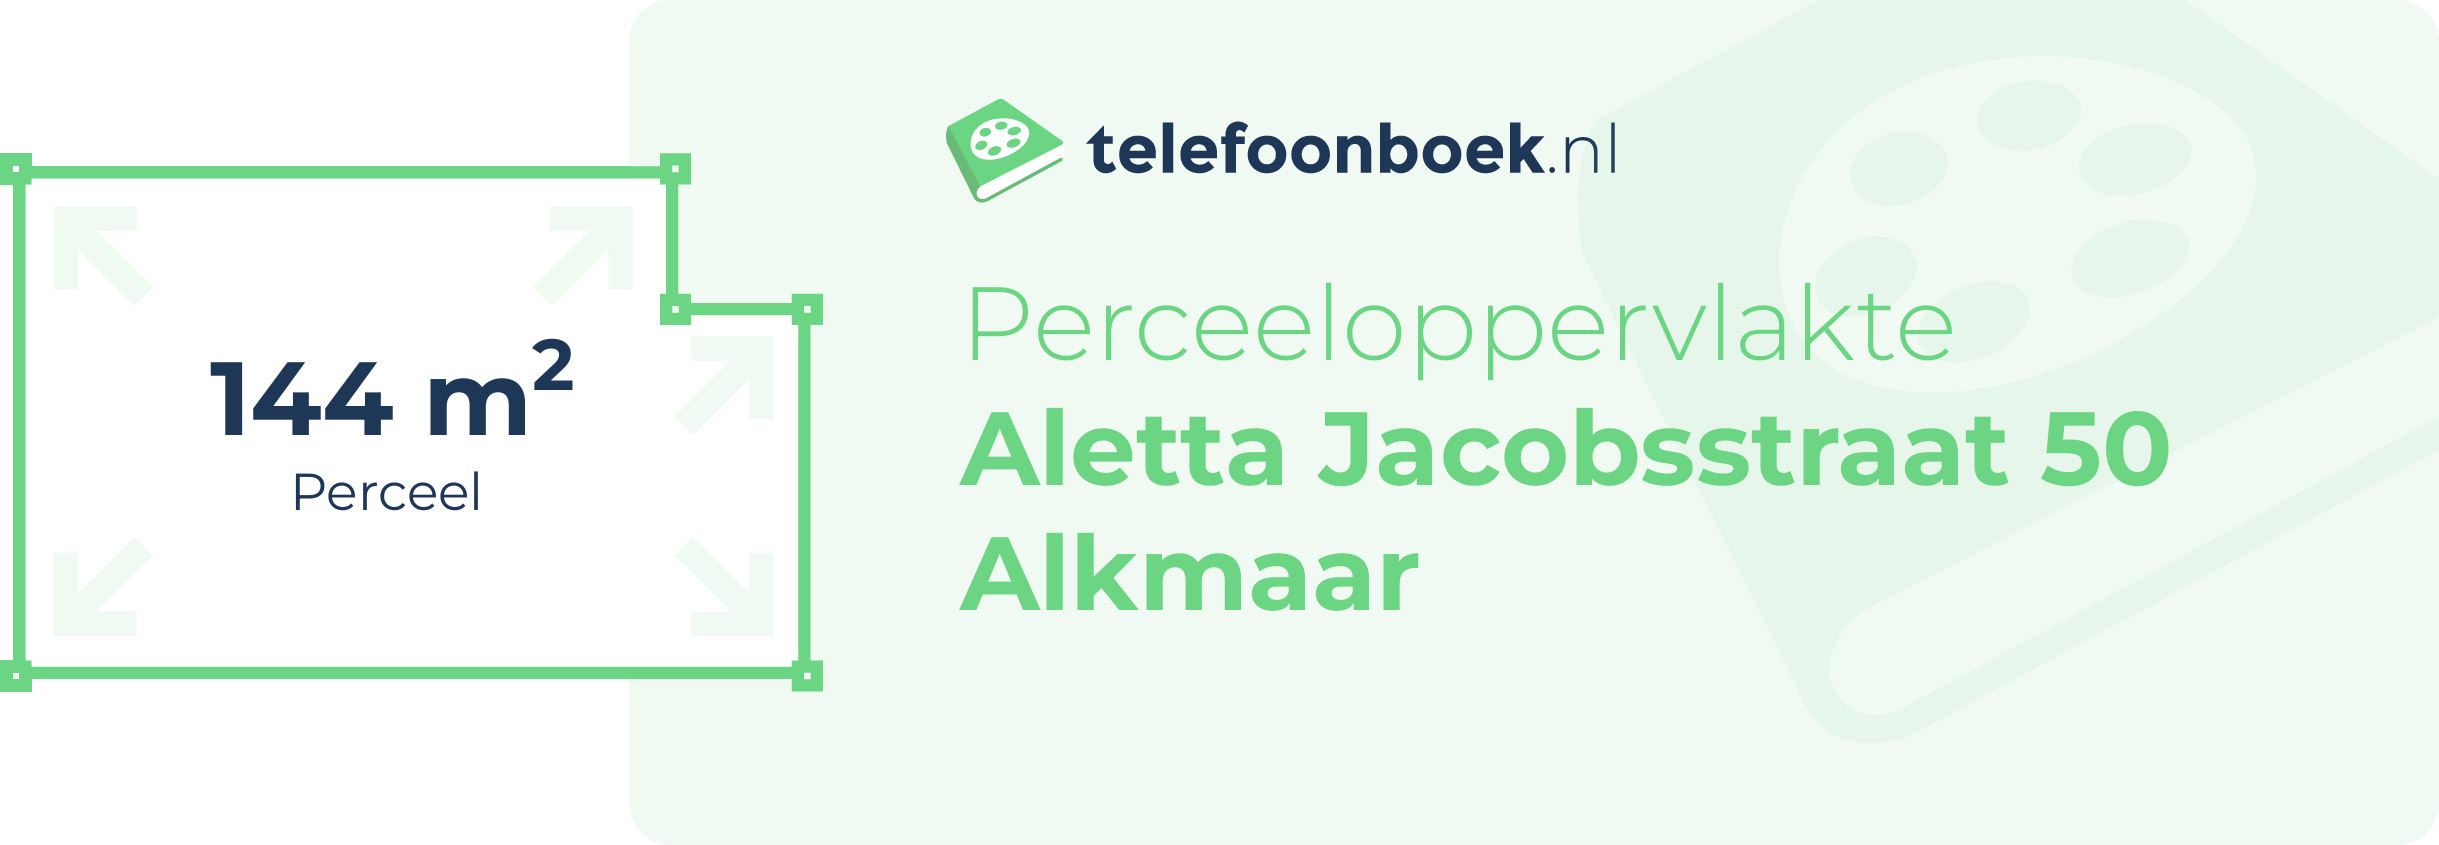 Perceeloppervlakte Aletta Jacobsstraat 50 Alkmaar